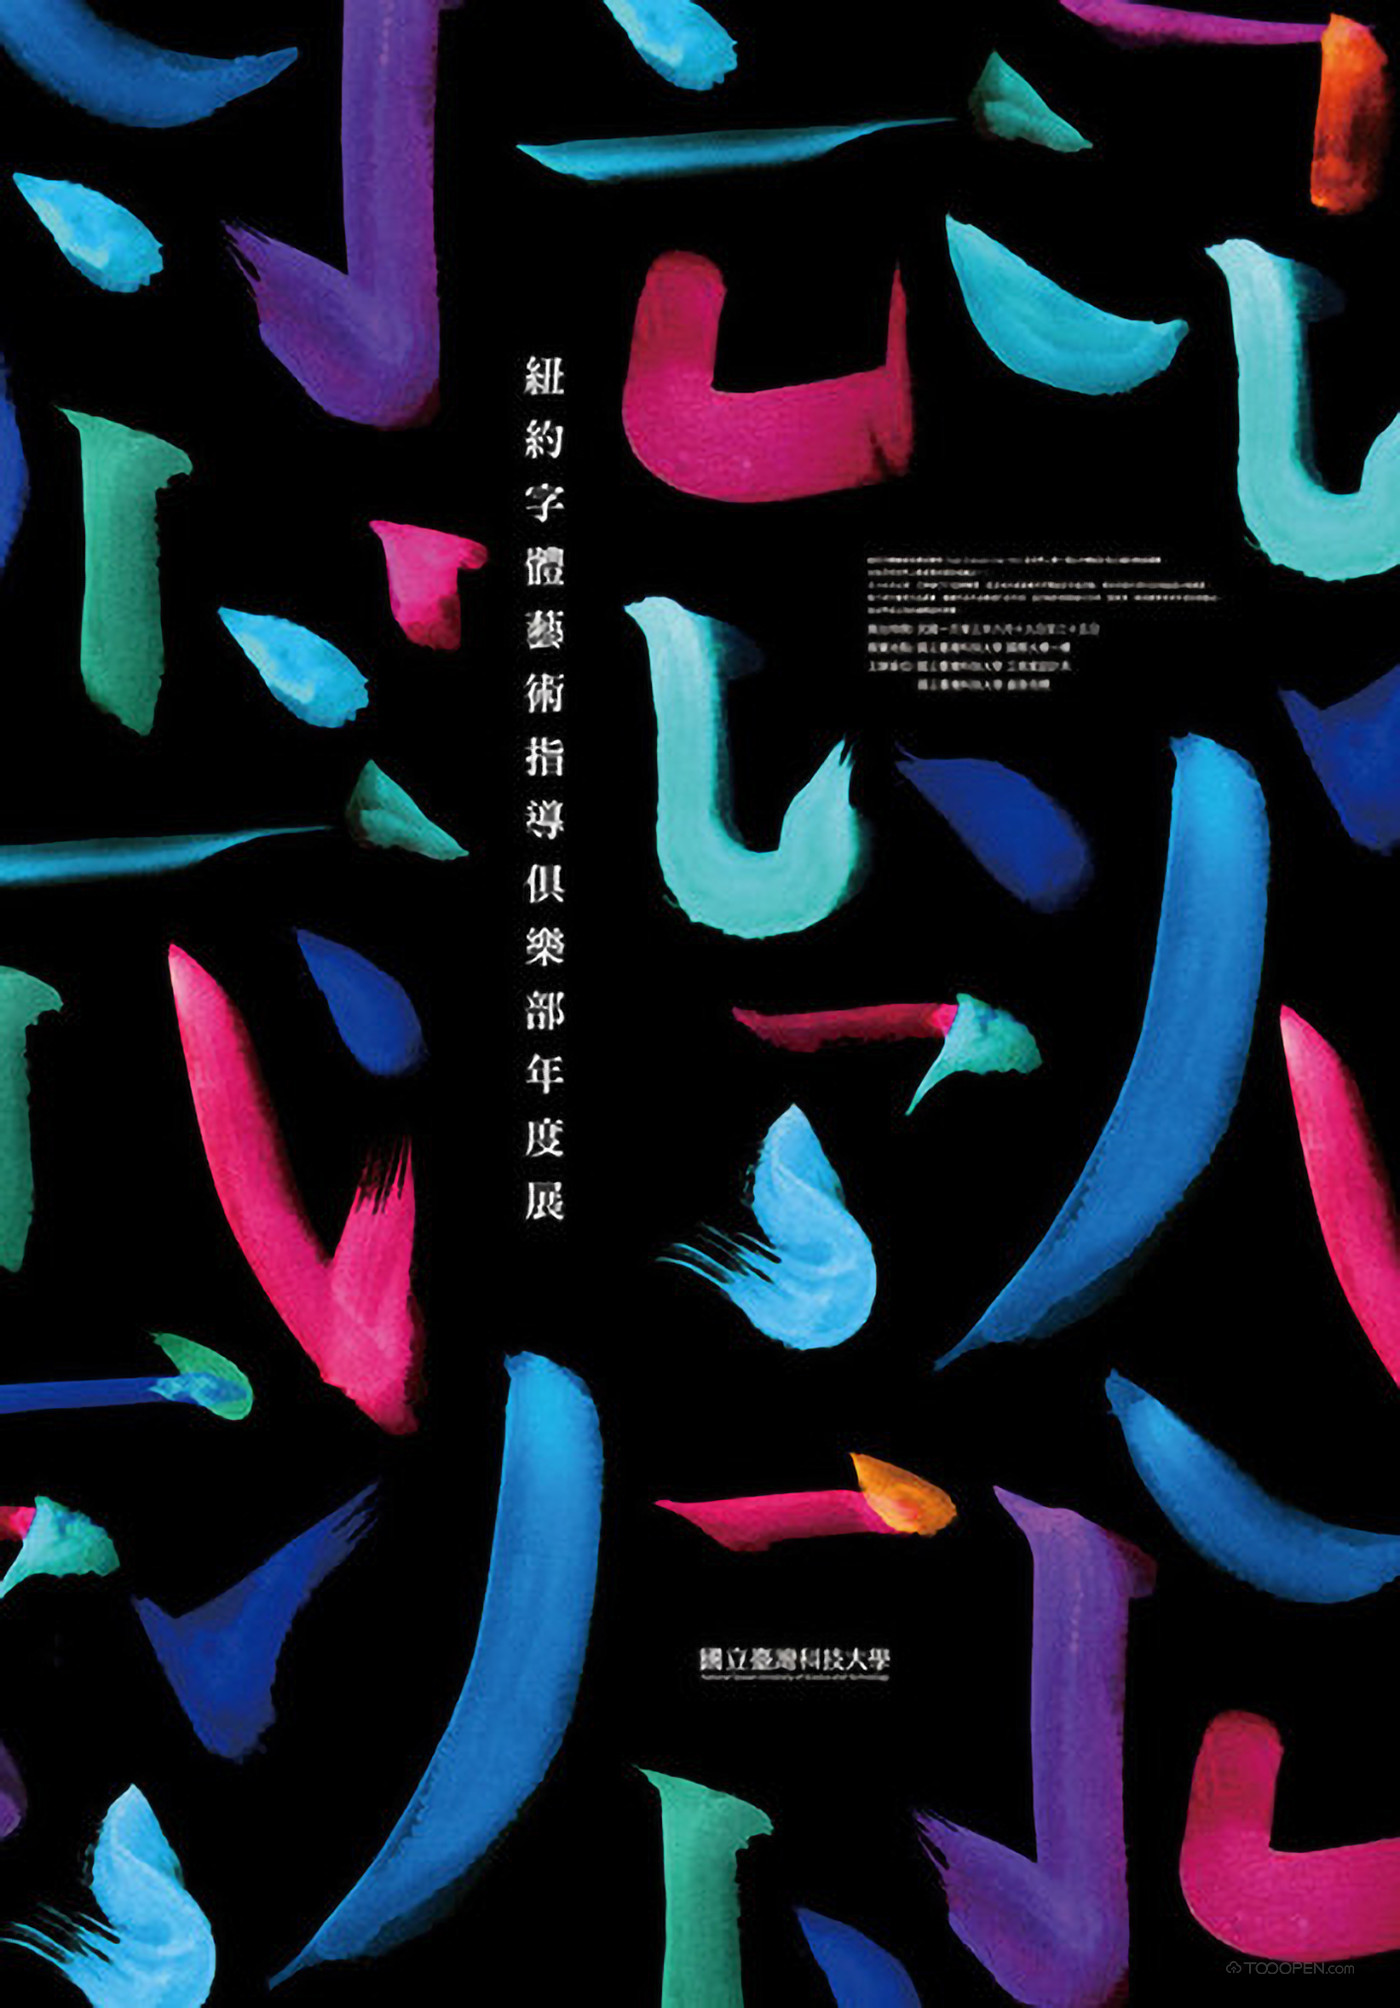 纽约字体艺术俱乐部年度展海报设计欣赏-01